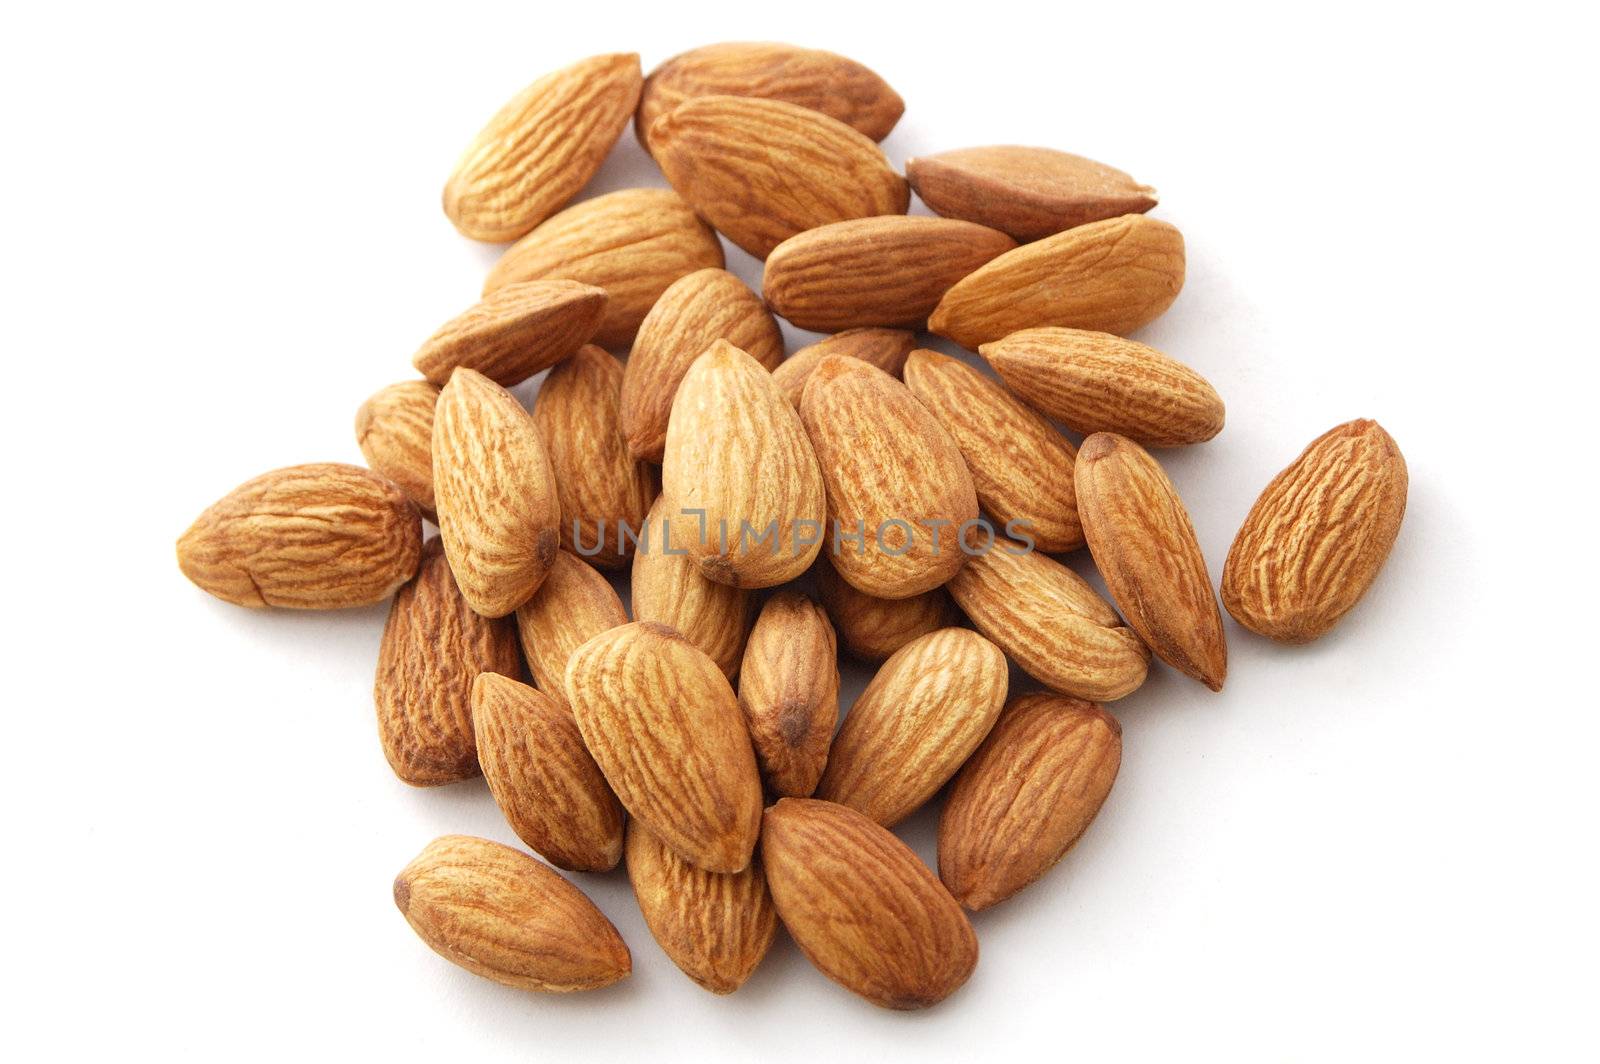 Almonds by pmaks